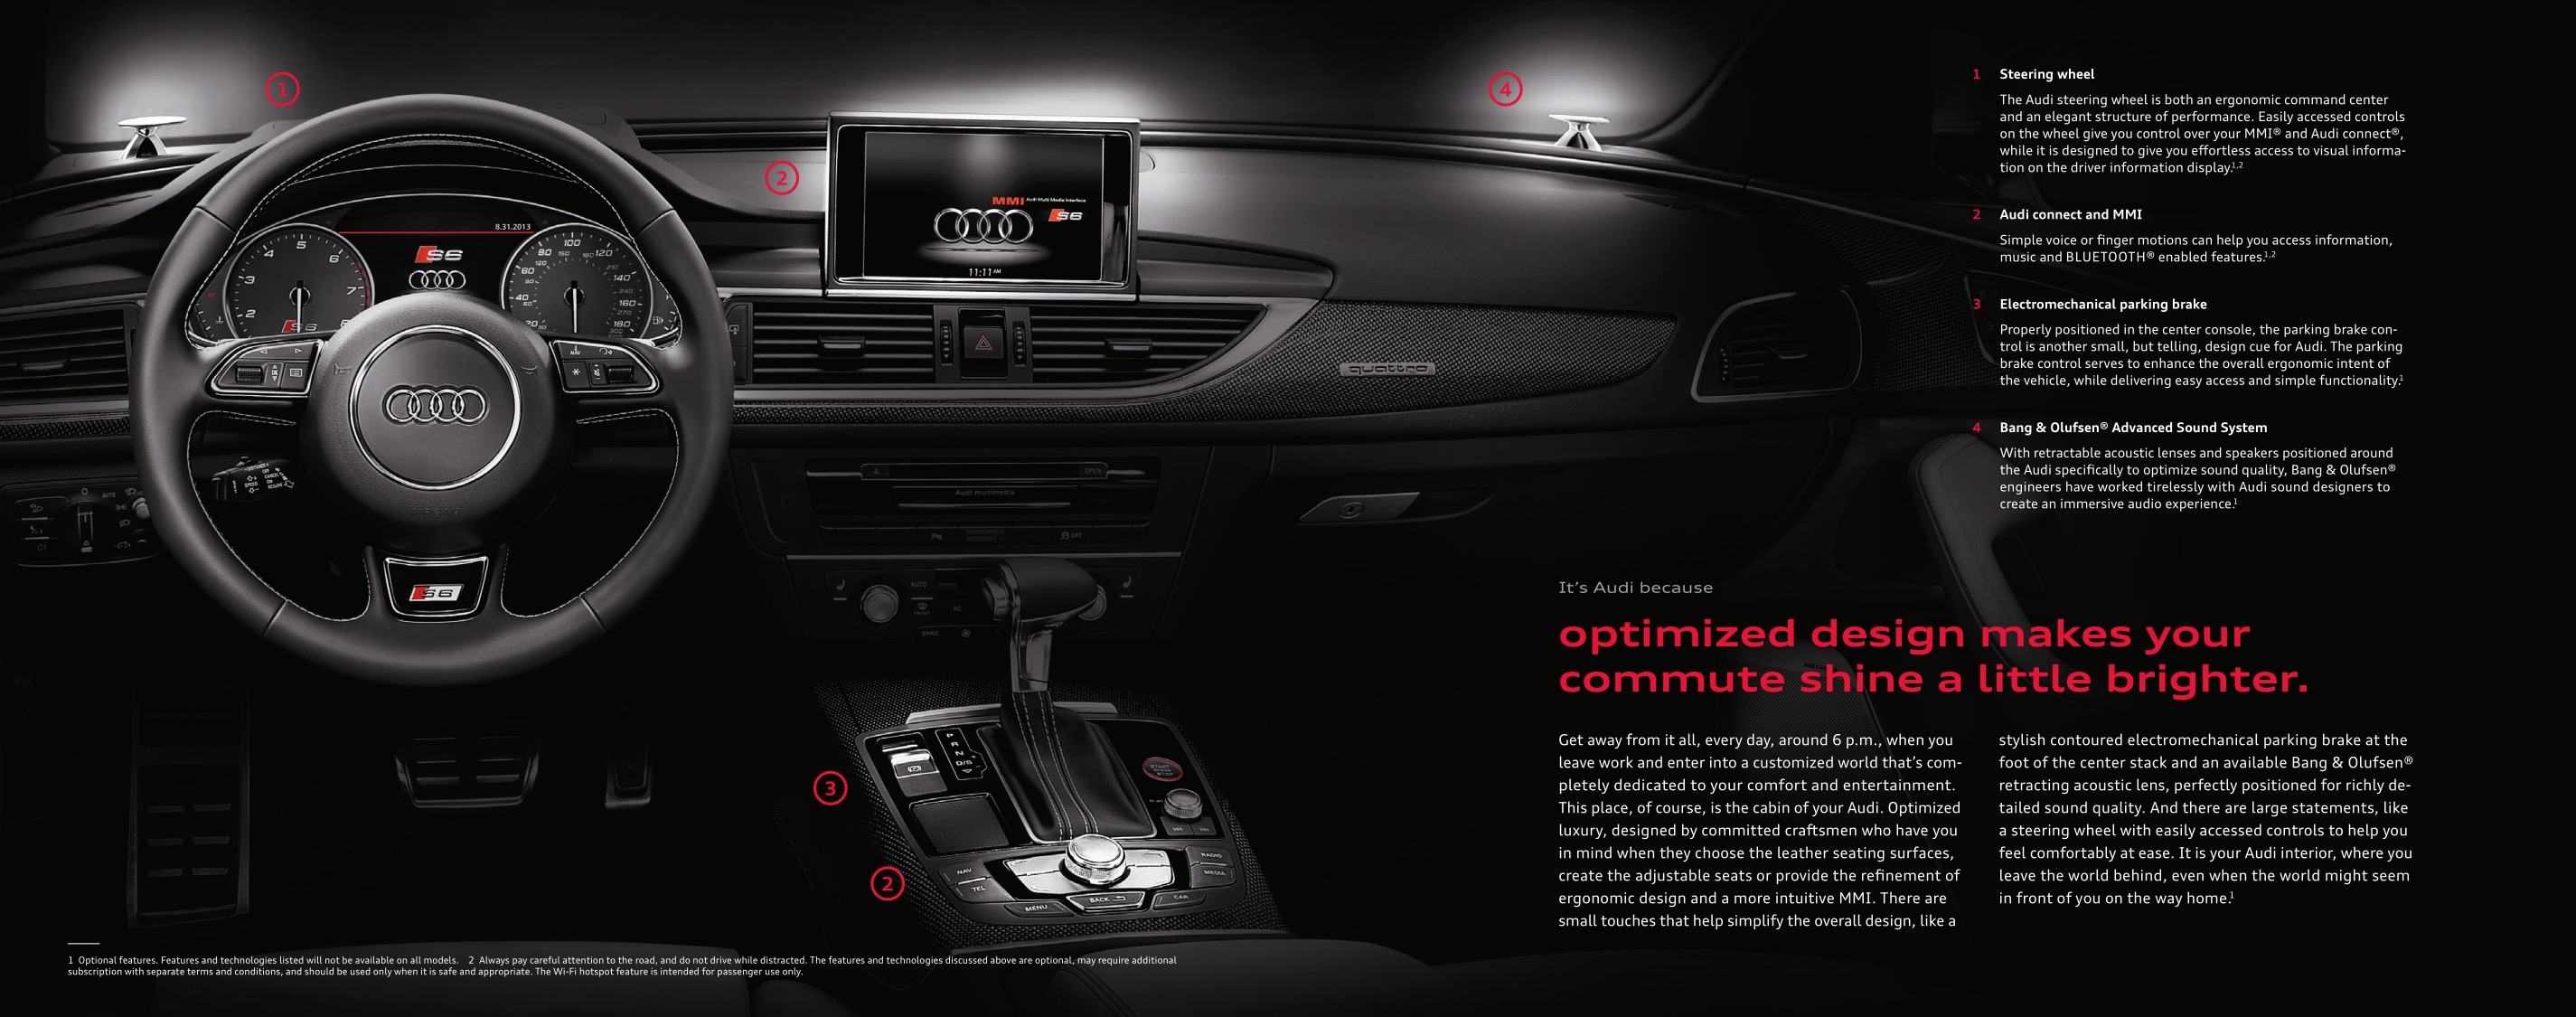 2014 Audi TT Brochure Page 27